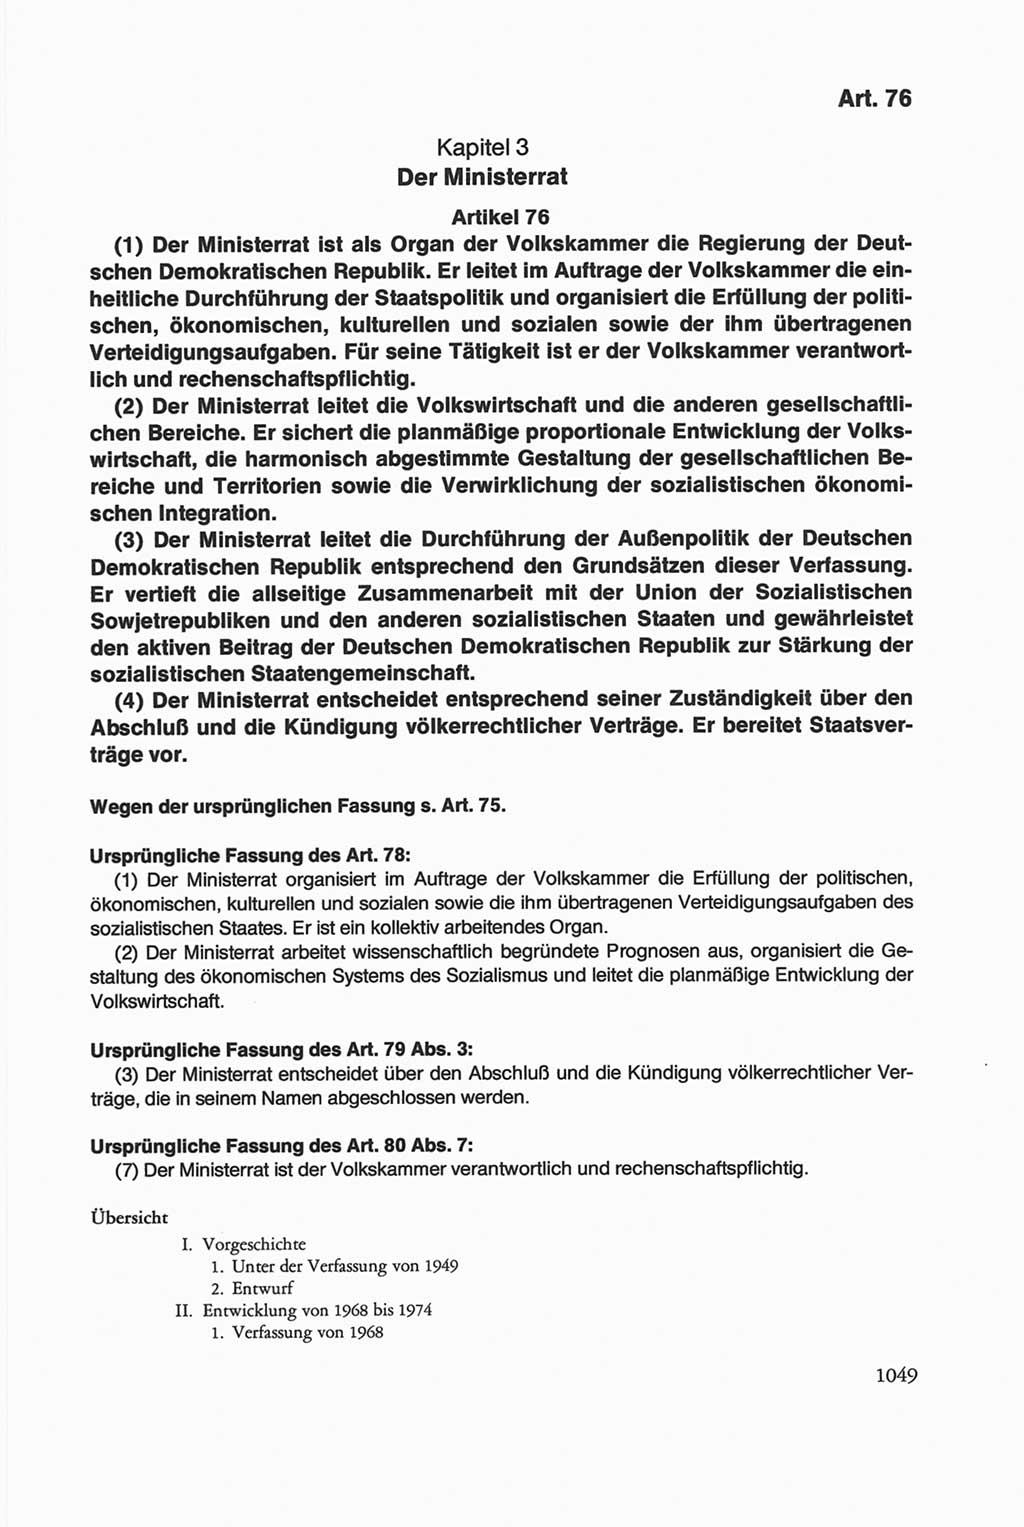 Die sozialistische Verfassung der Deutschen Demokratischen Republik (DDR), Kommentar 1982, Seite 1049 (Soz. Verf. DDR Komm. 1982, S. 1049)